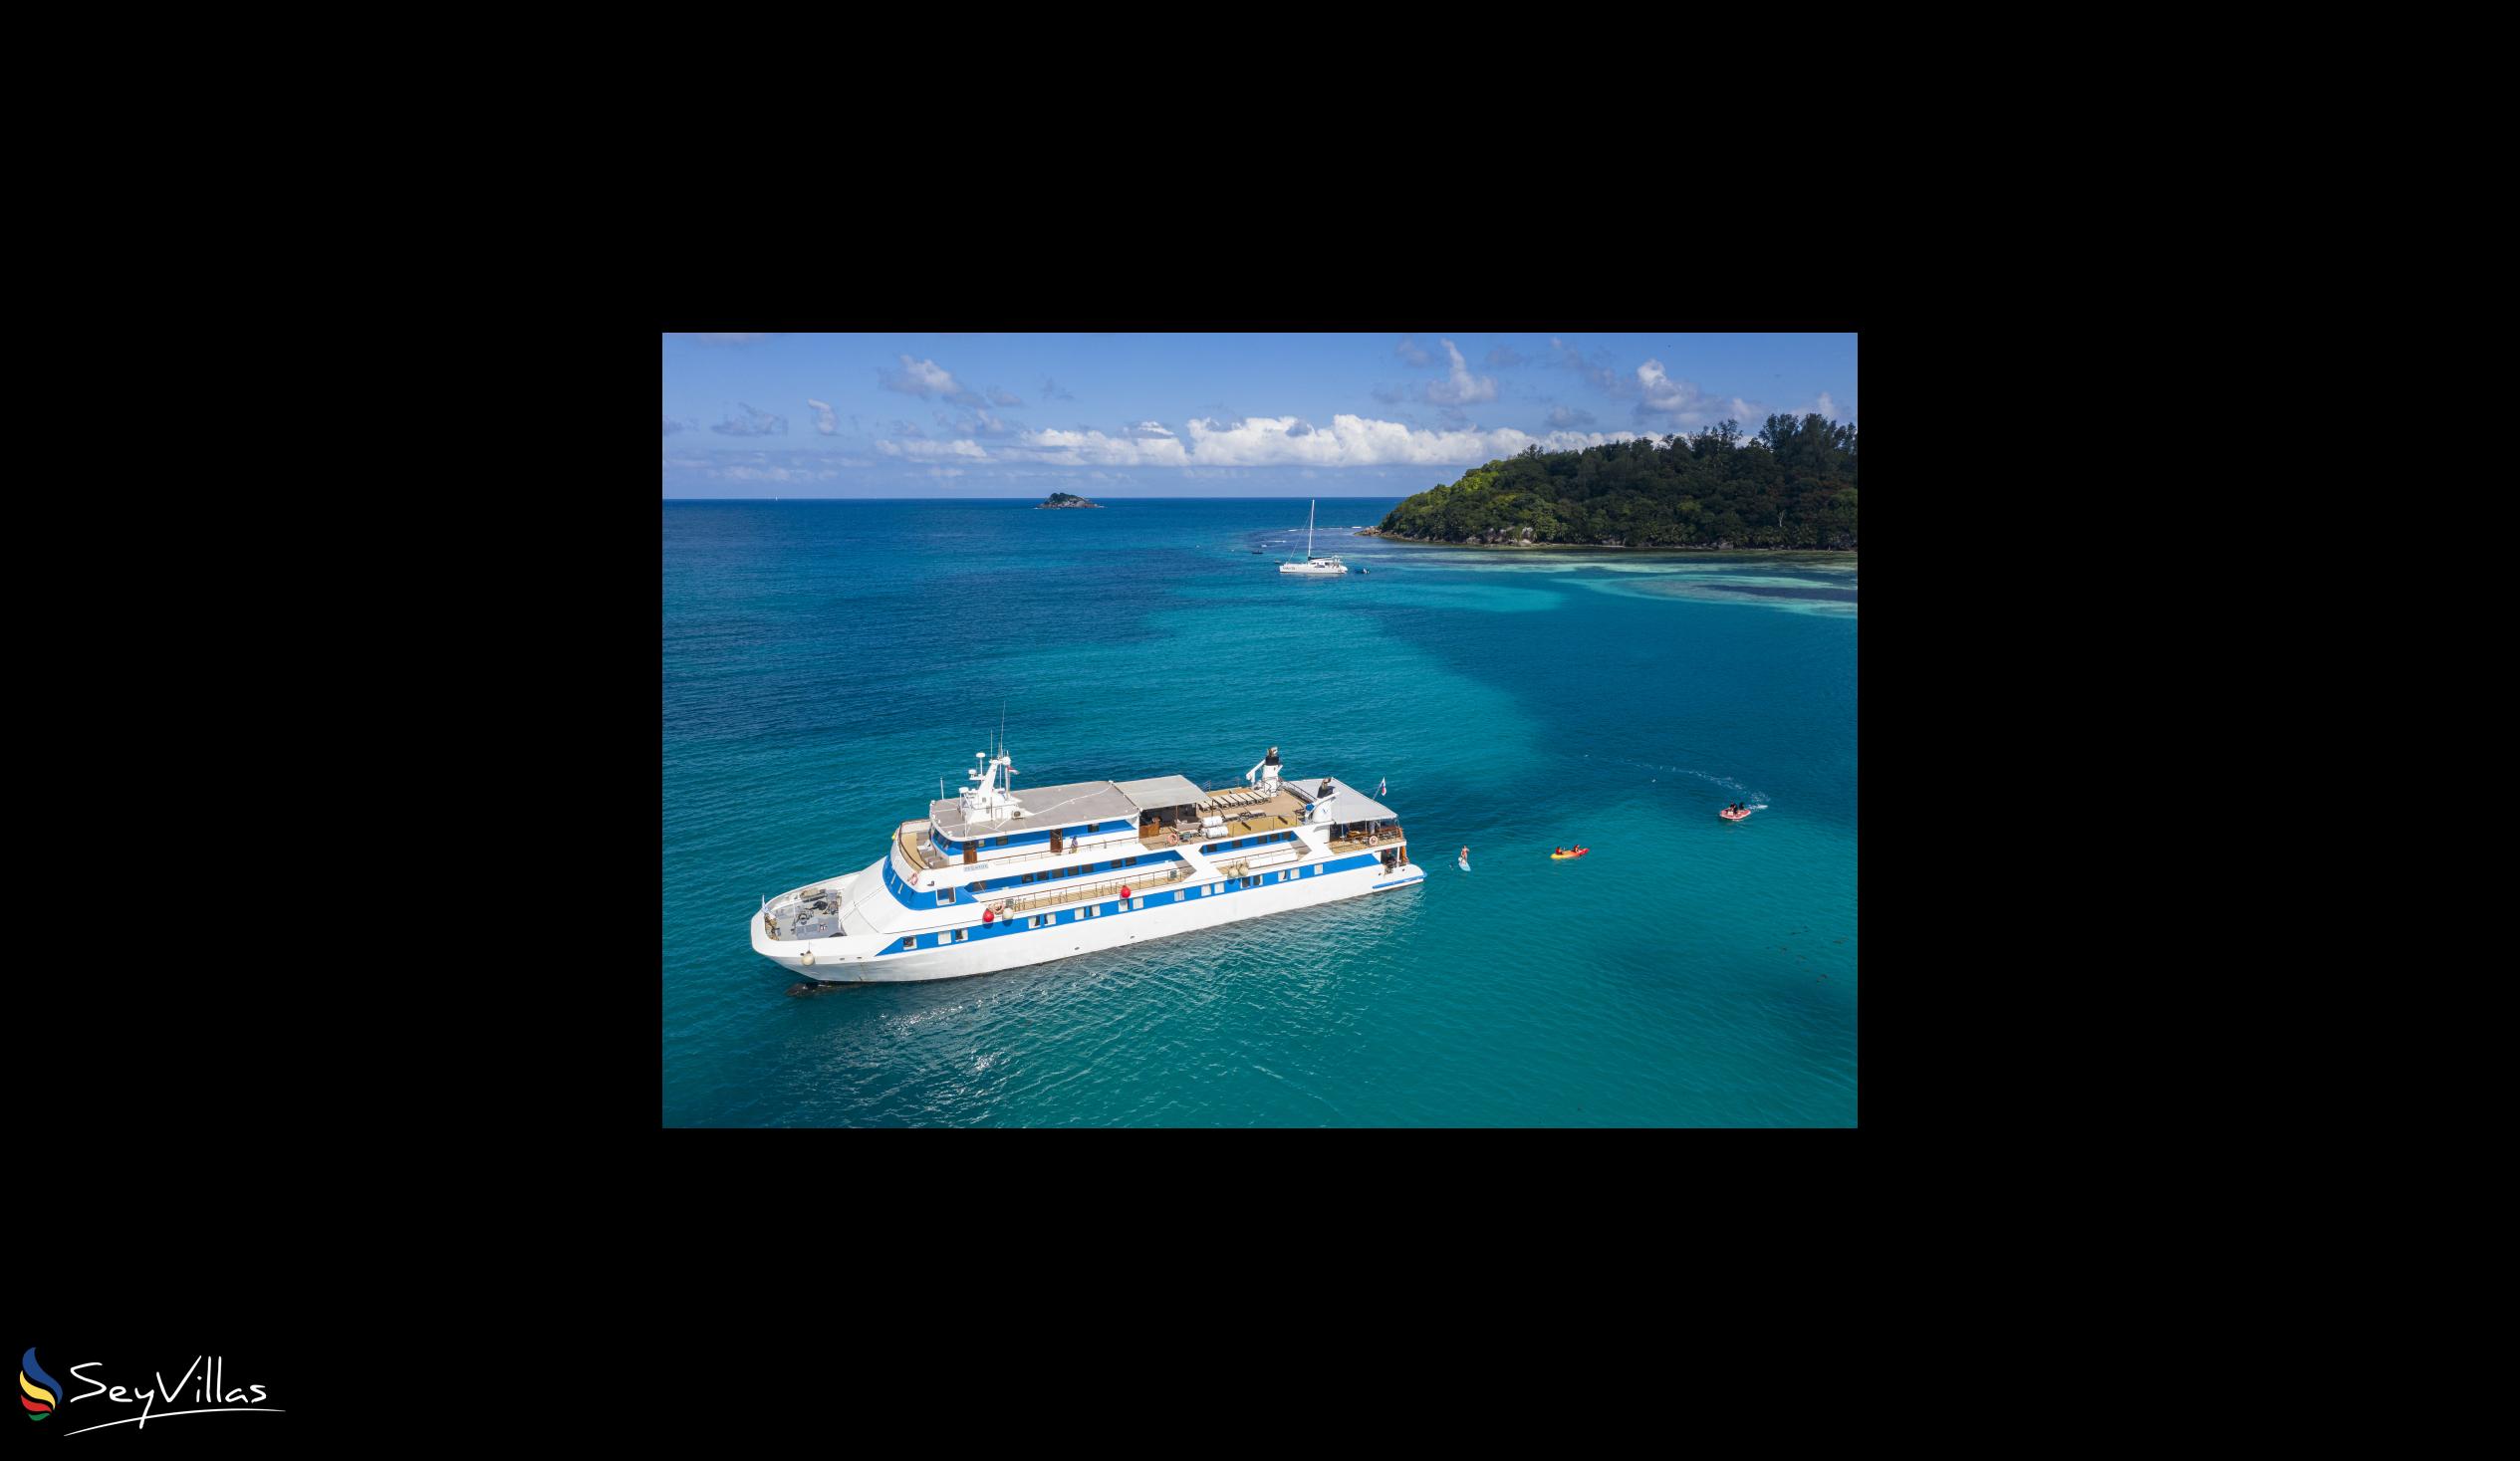 Foto 3: Pegasus Cruise (Variety Garden of Eden 4 nights) - Aussenbereich - Seychellen (Seychellen)